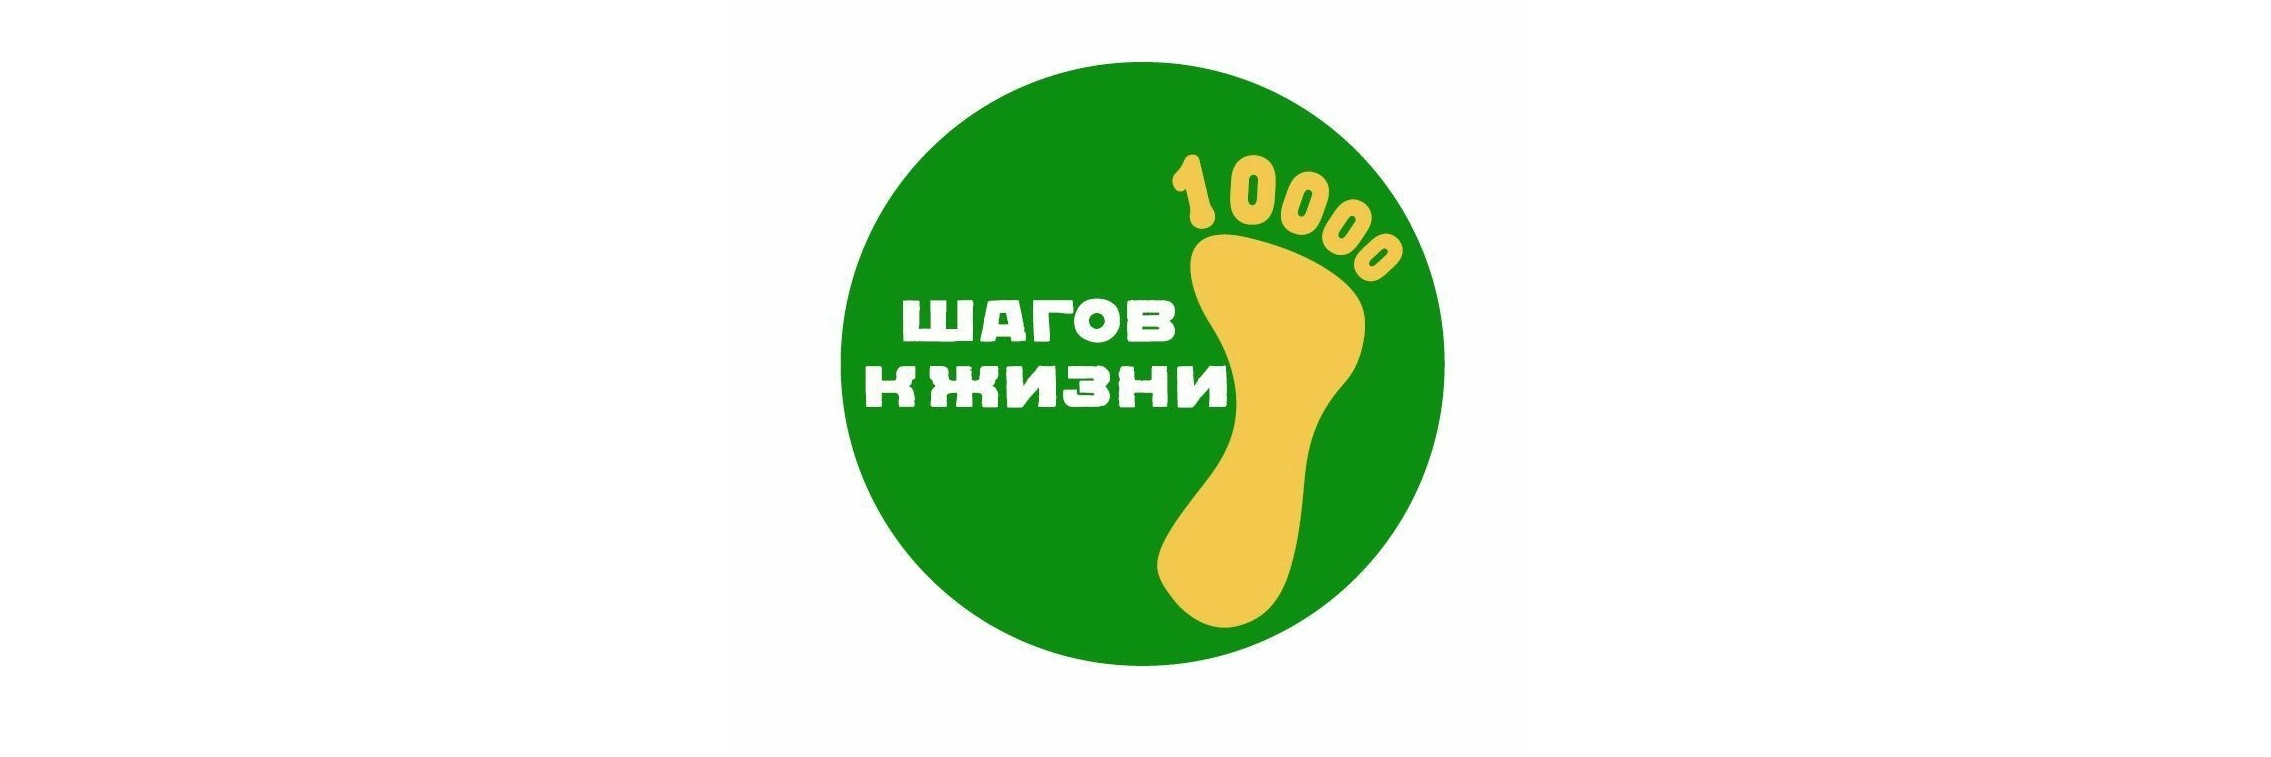 «10 000 шагов к жизни».